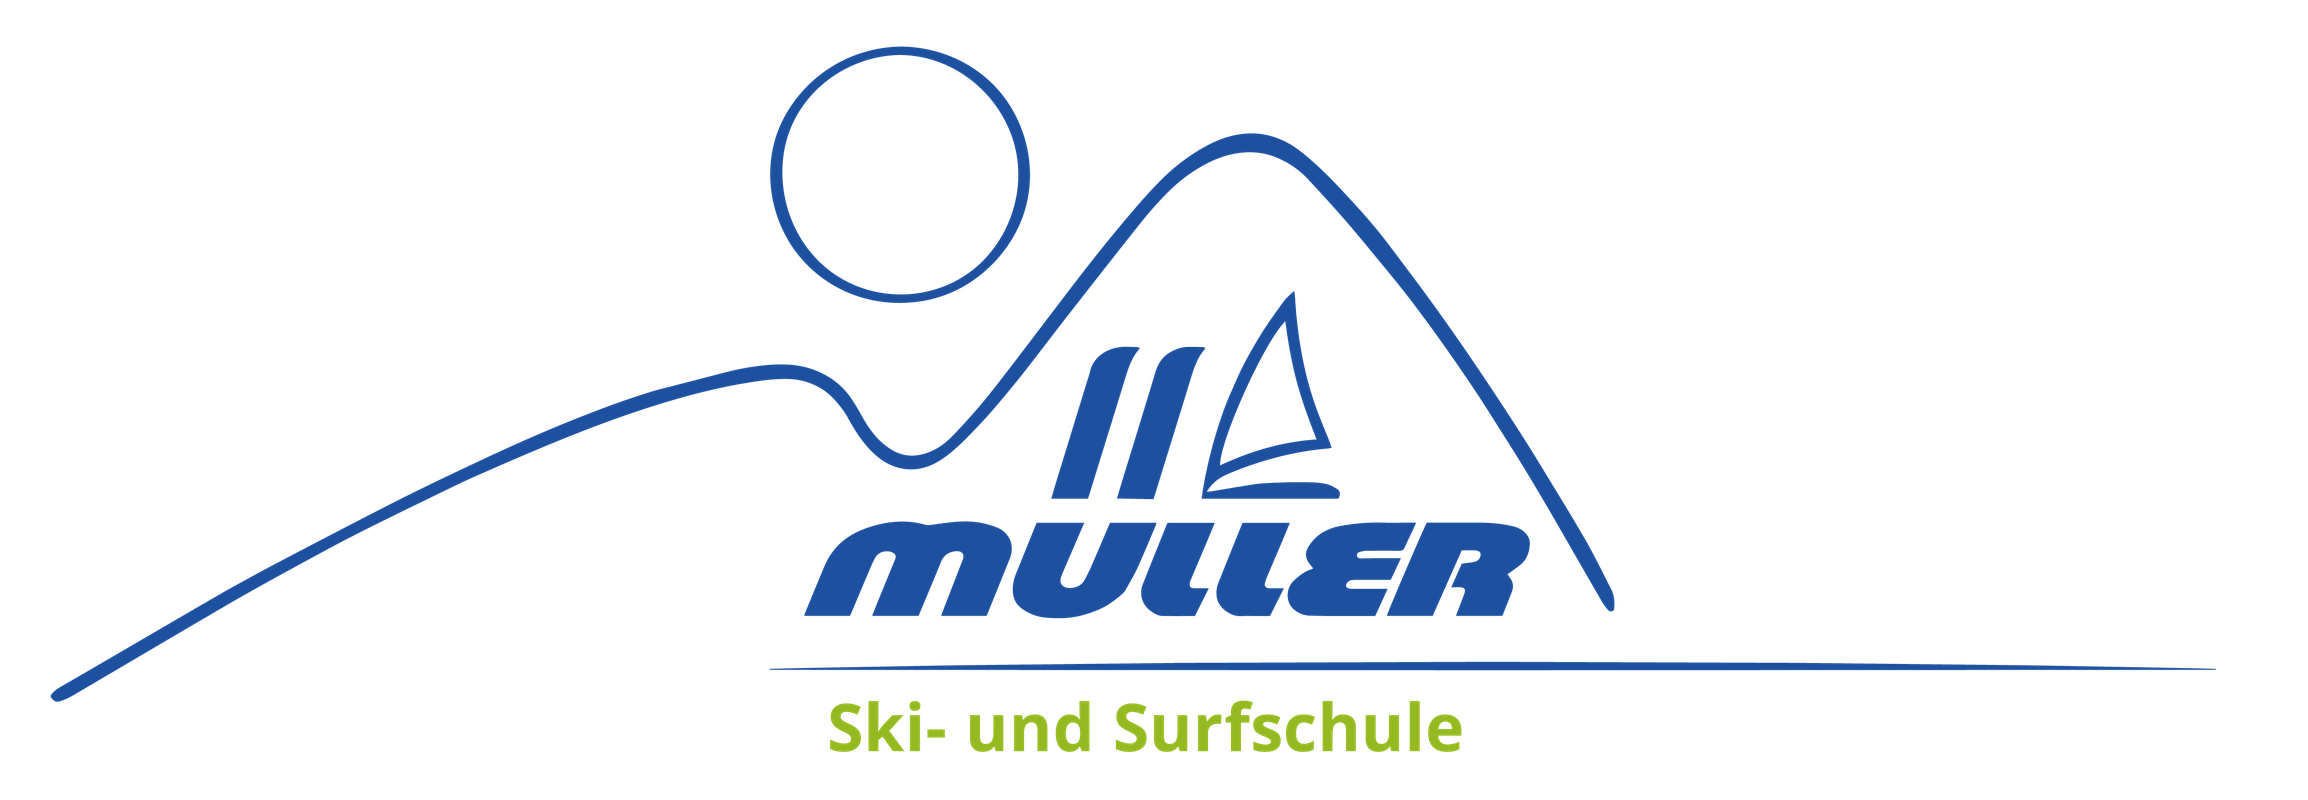 SUP und Surfschule Müller Ammersee